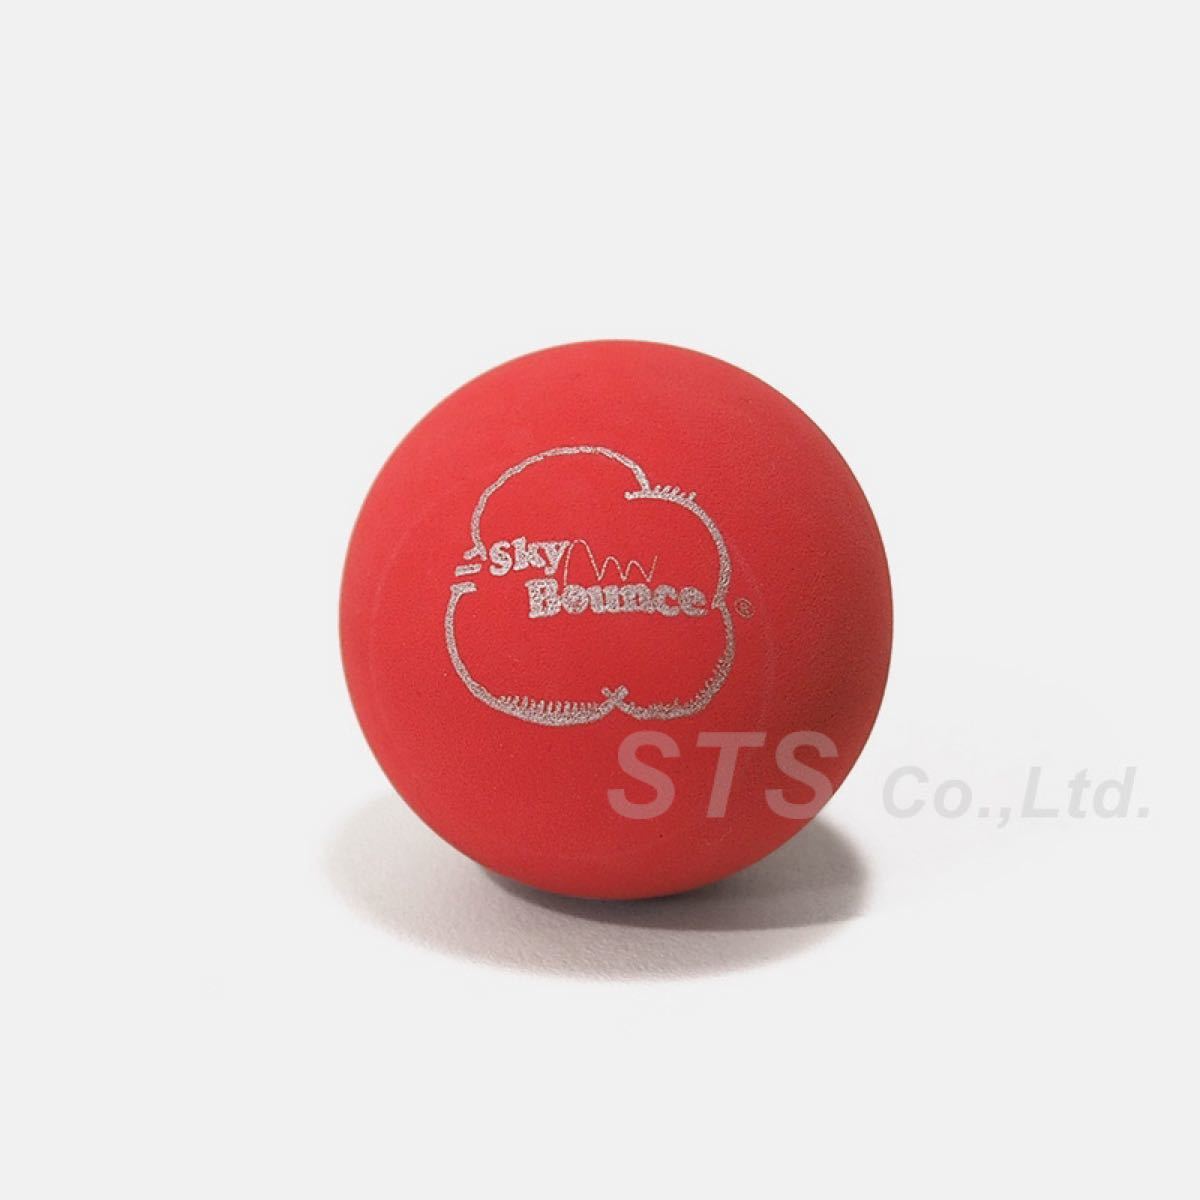 新品!送料込!Supreme - SkyBounce Handball Red